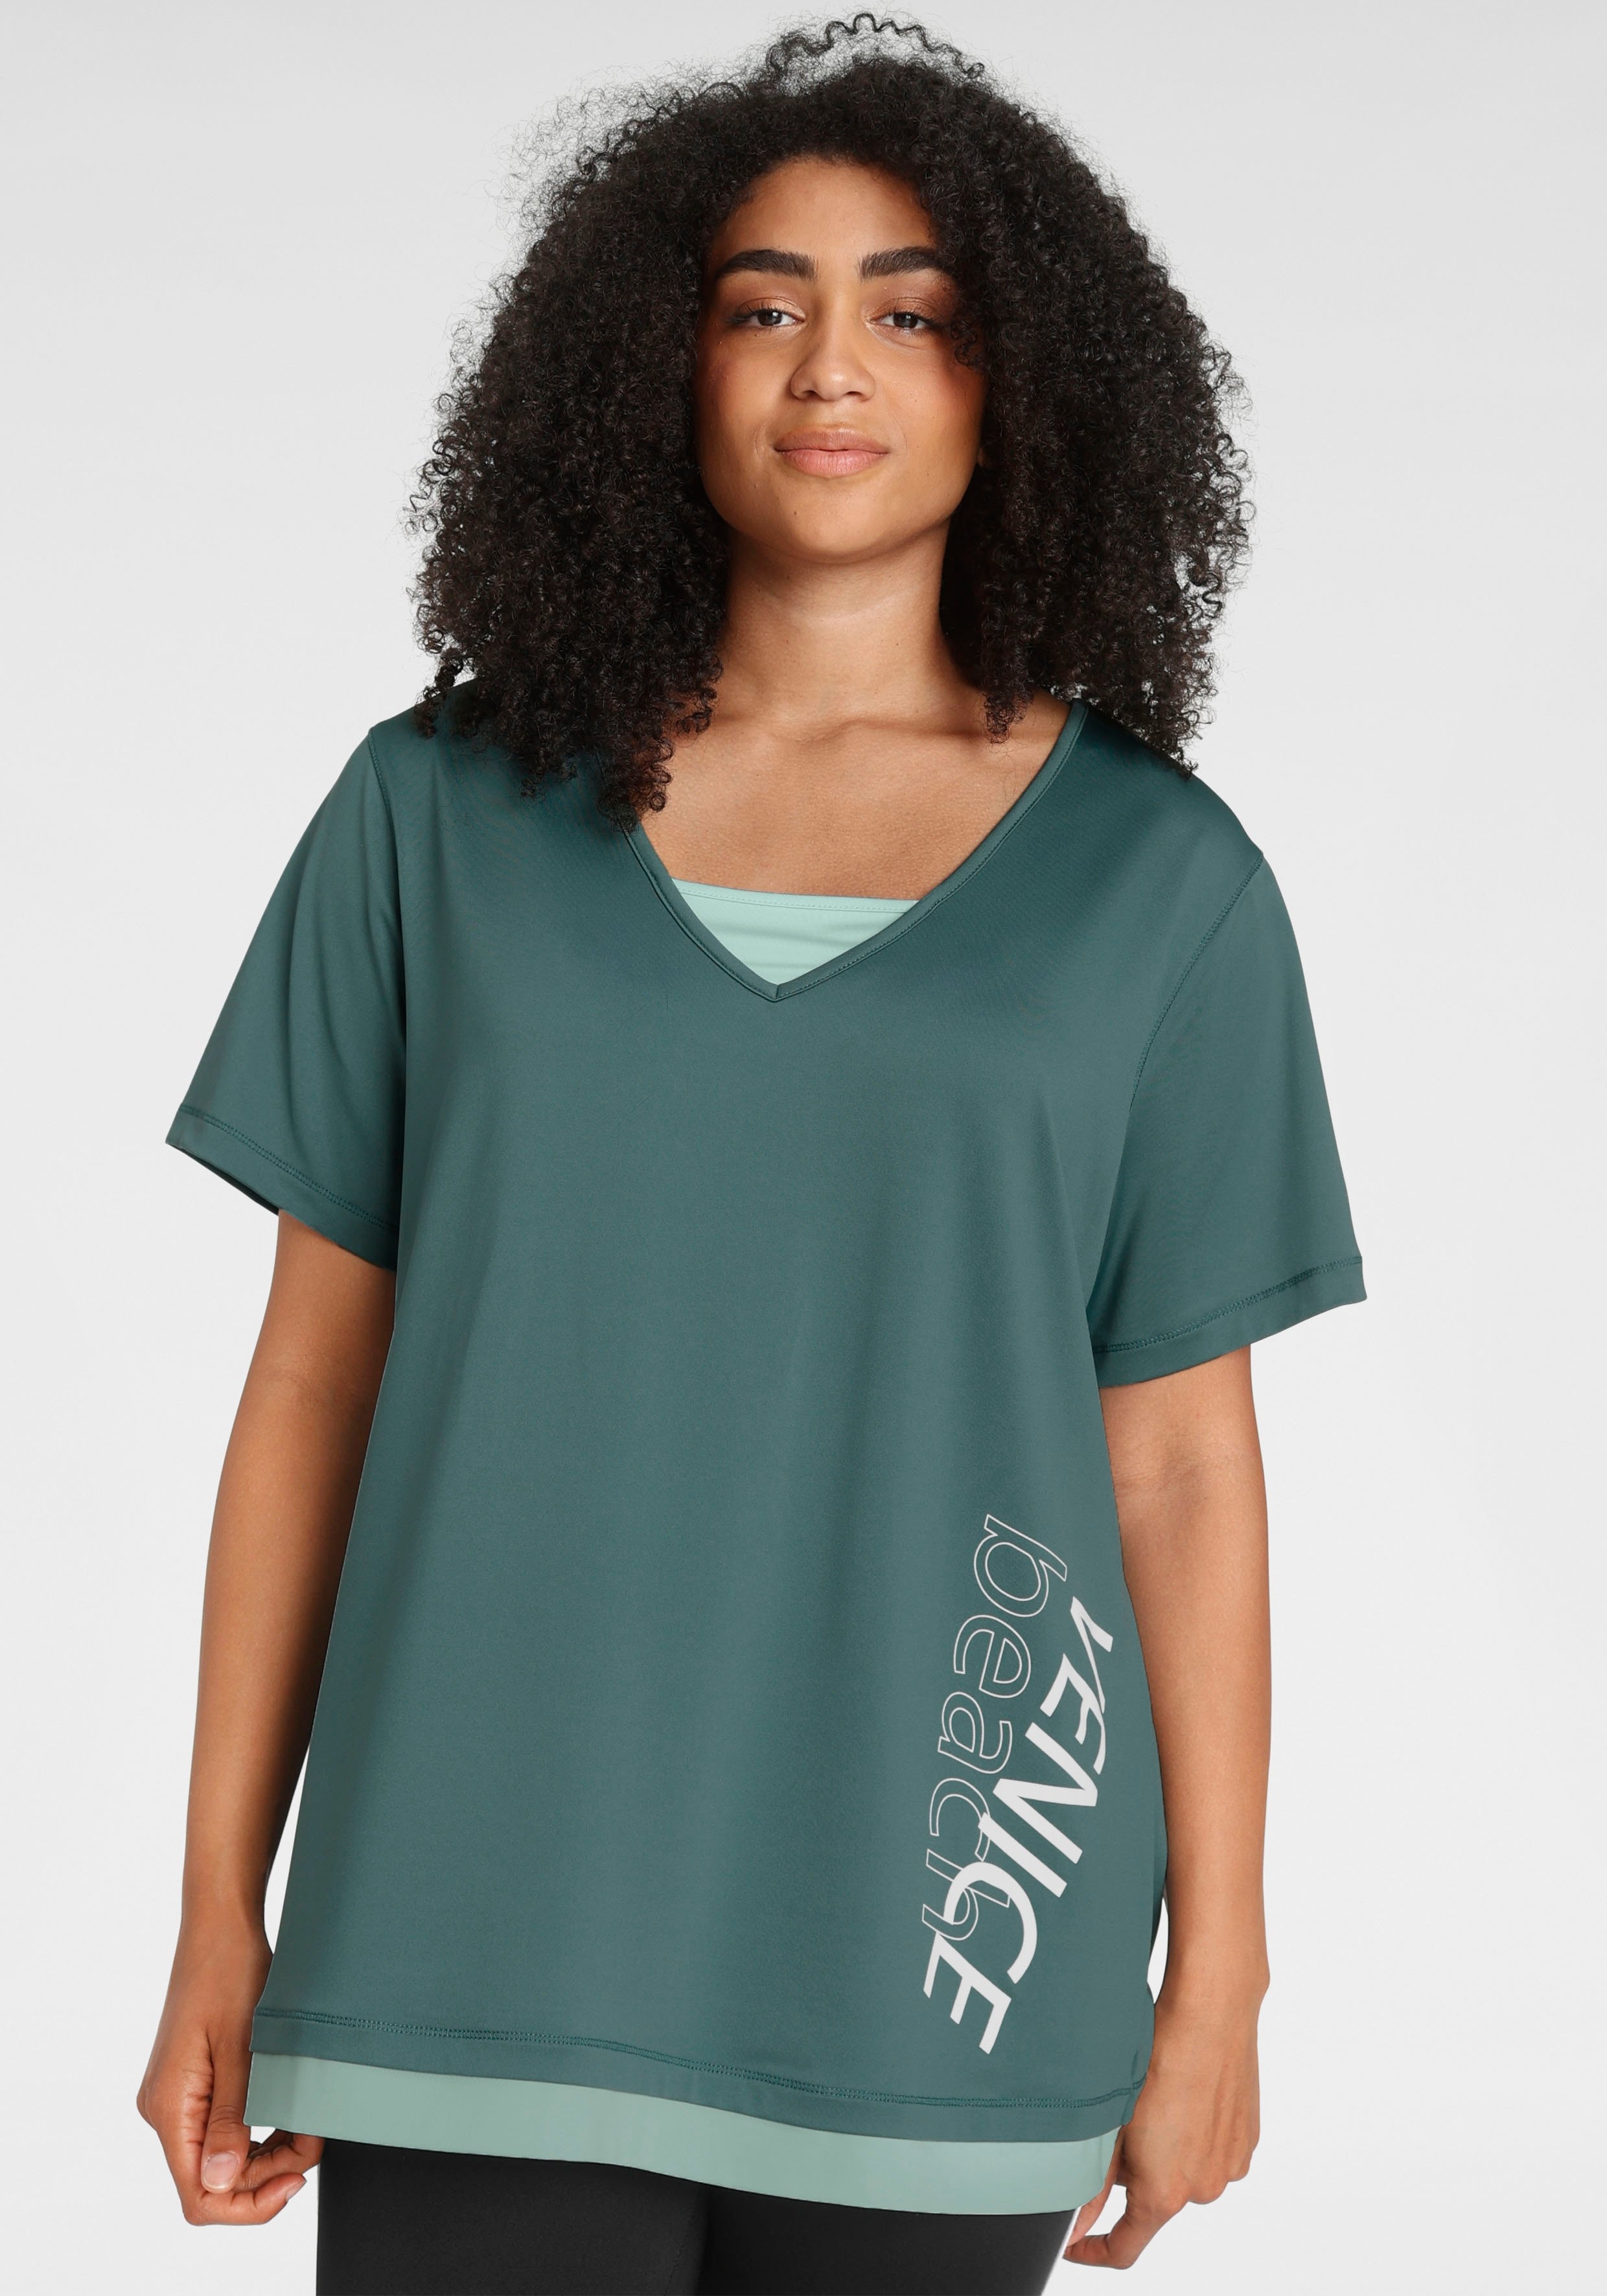 zijn abortus Verzoenen Venice Beach Functioneel shirt Grote maten online bestellen | OTTO